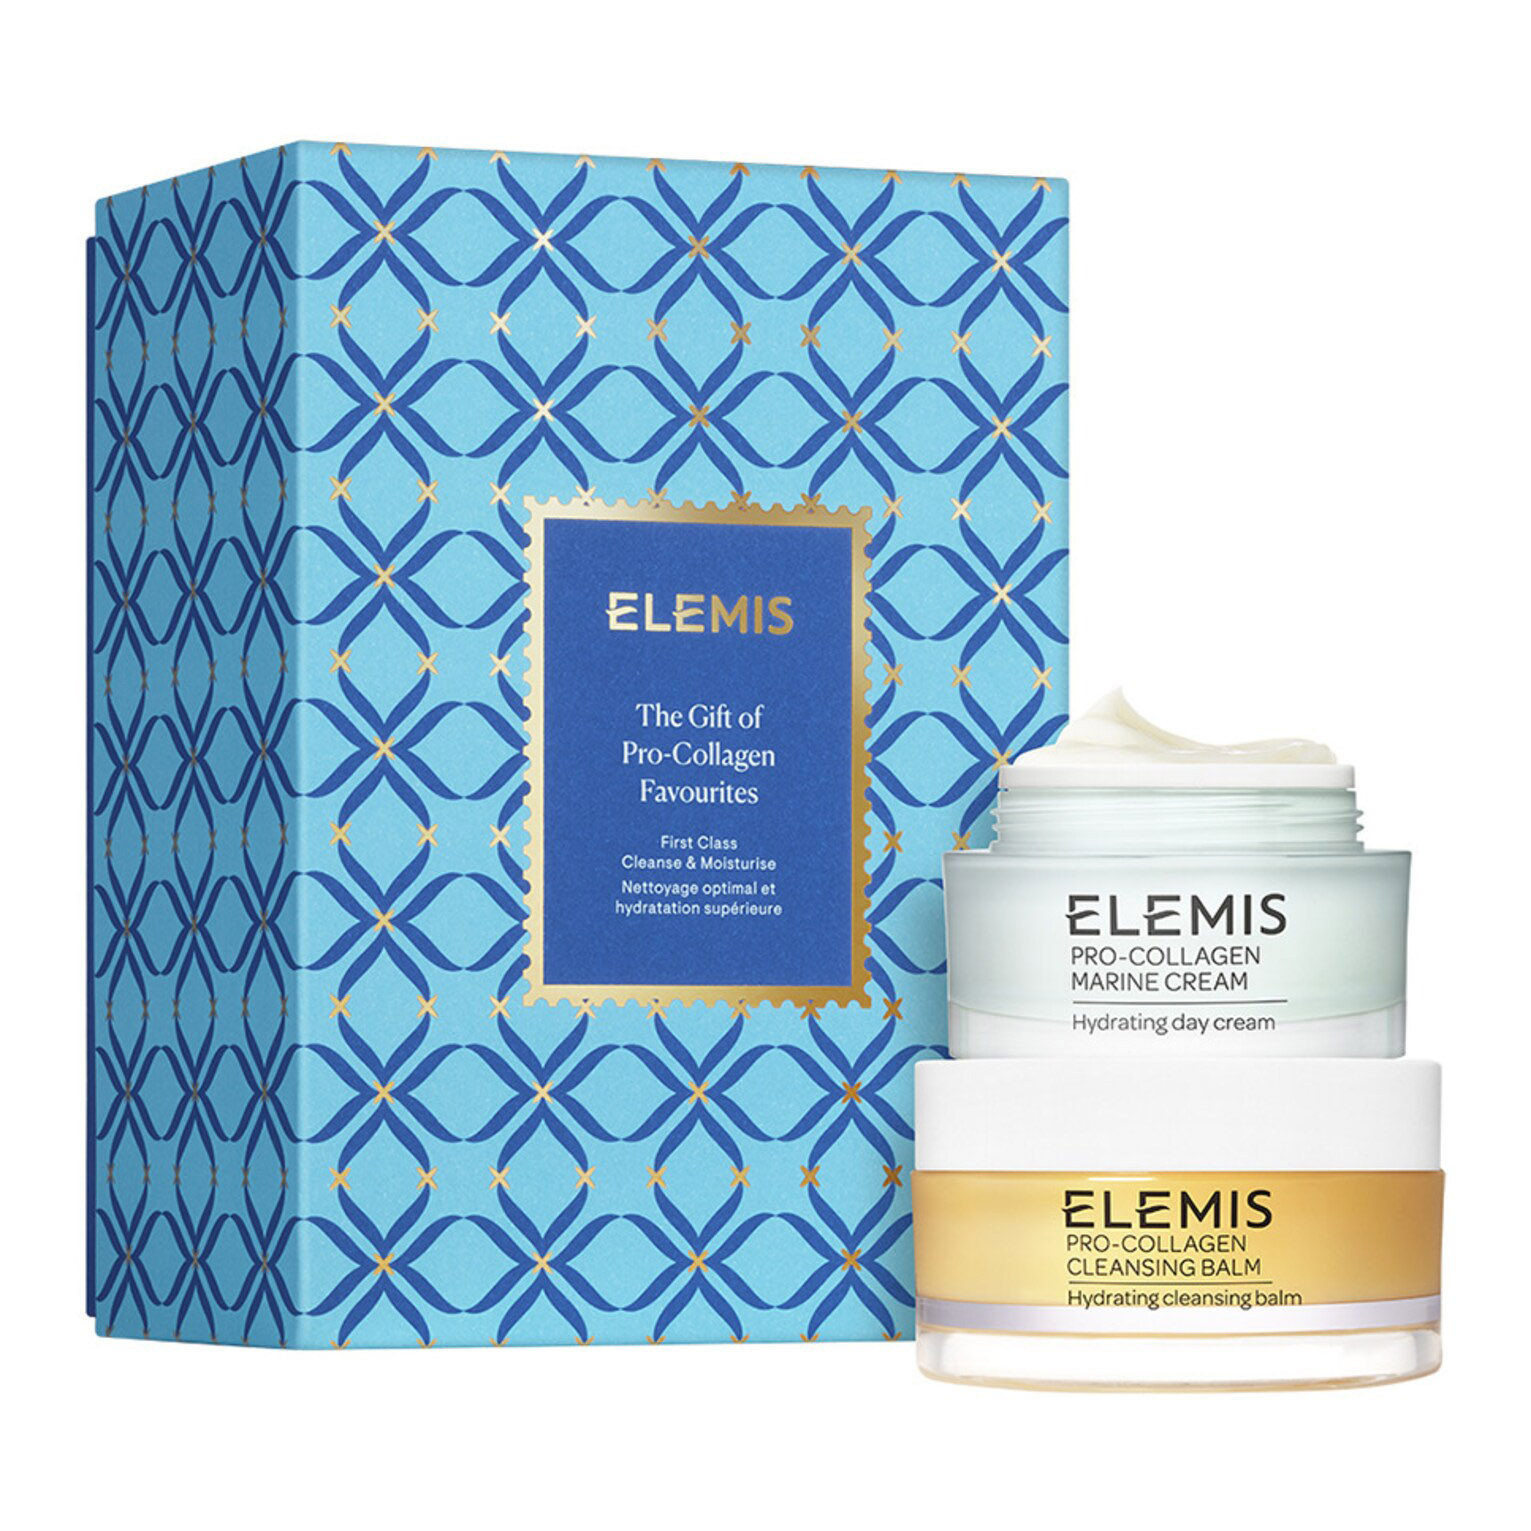 Подарочный набор Elemis The Gift Of Pro-Collagen, 2 предмета набор знакомство обновление и защита кожи elemis pro collagen renew